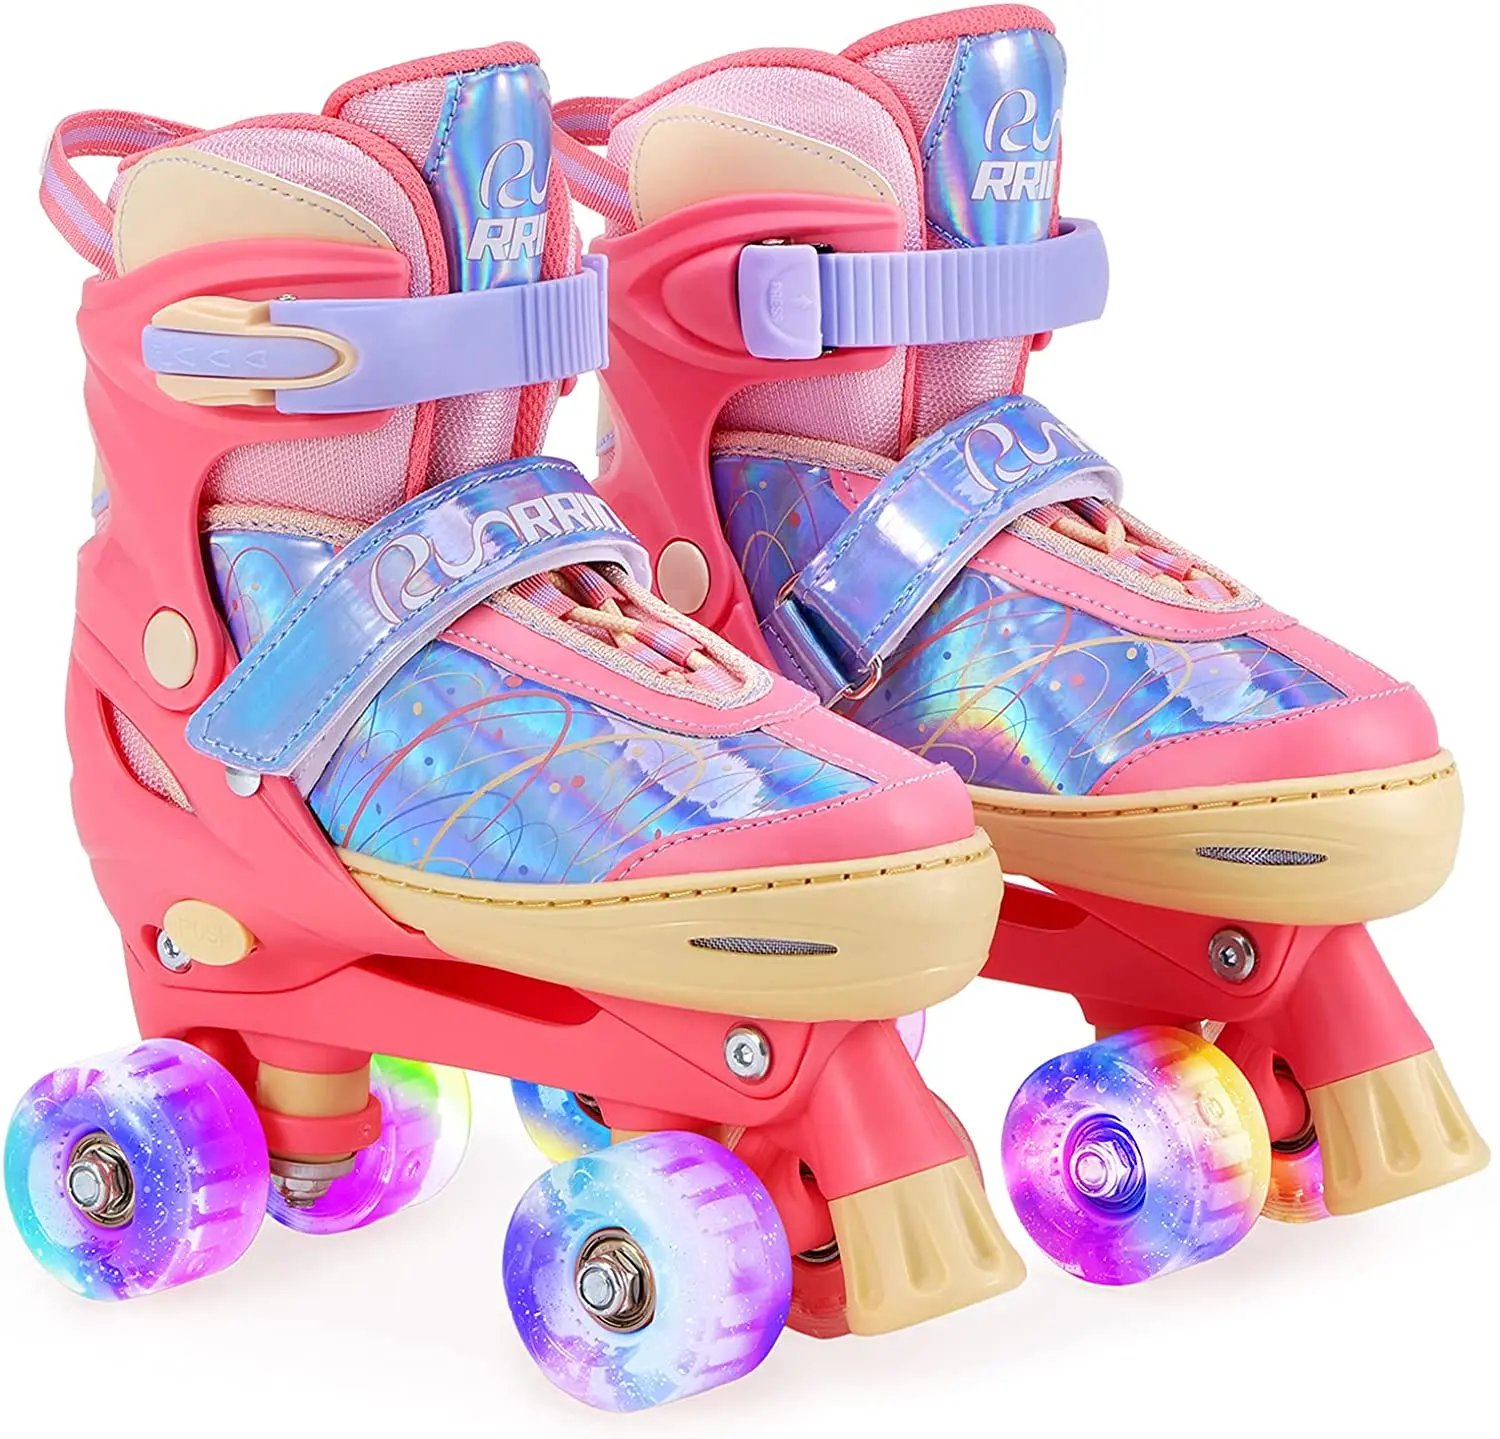 Kids' Quad Roller Skates 4 Wheels Adjustable Size 